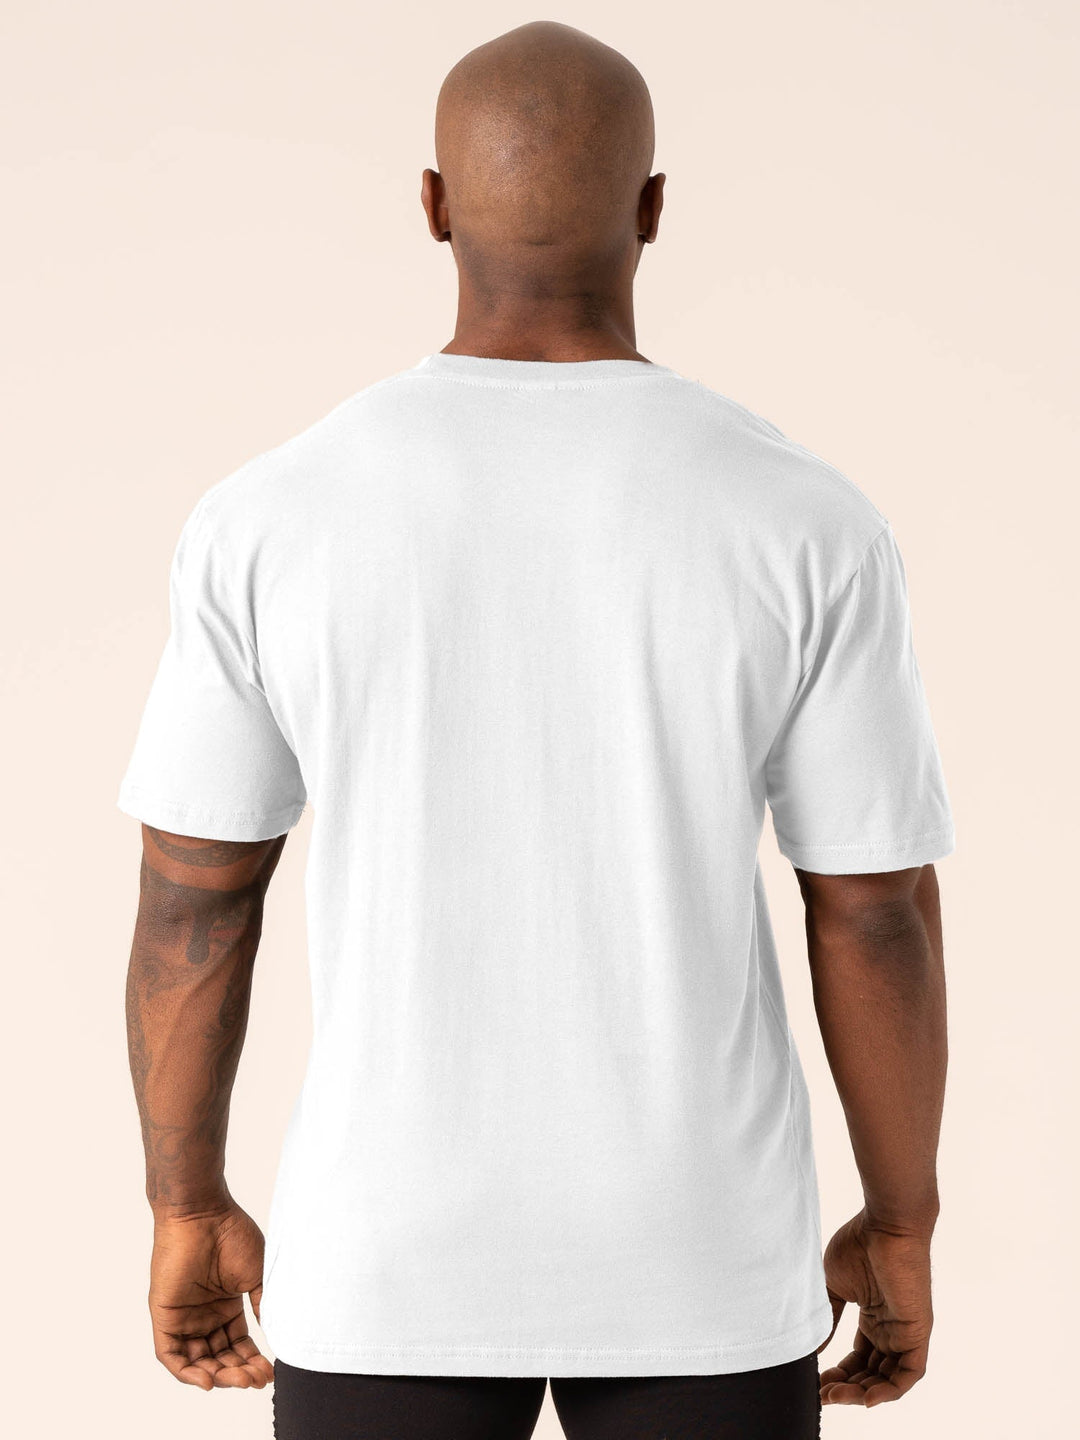 Grit Oversized T-Shirt - White Clothing Ryderwear 